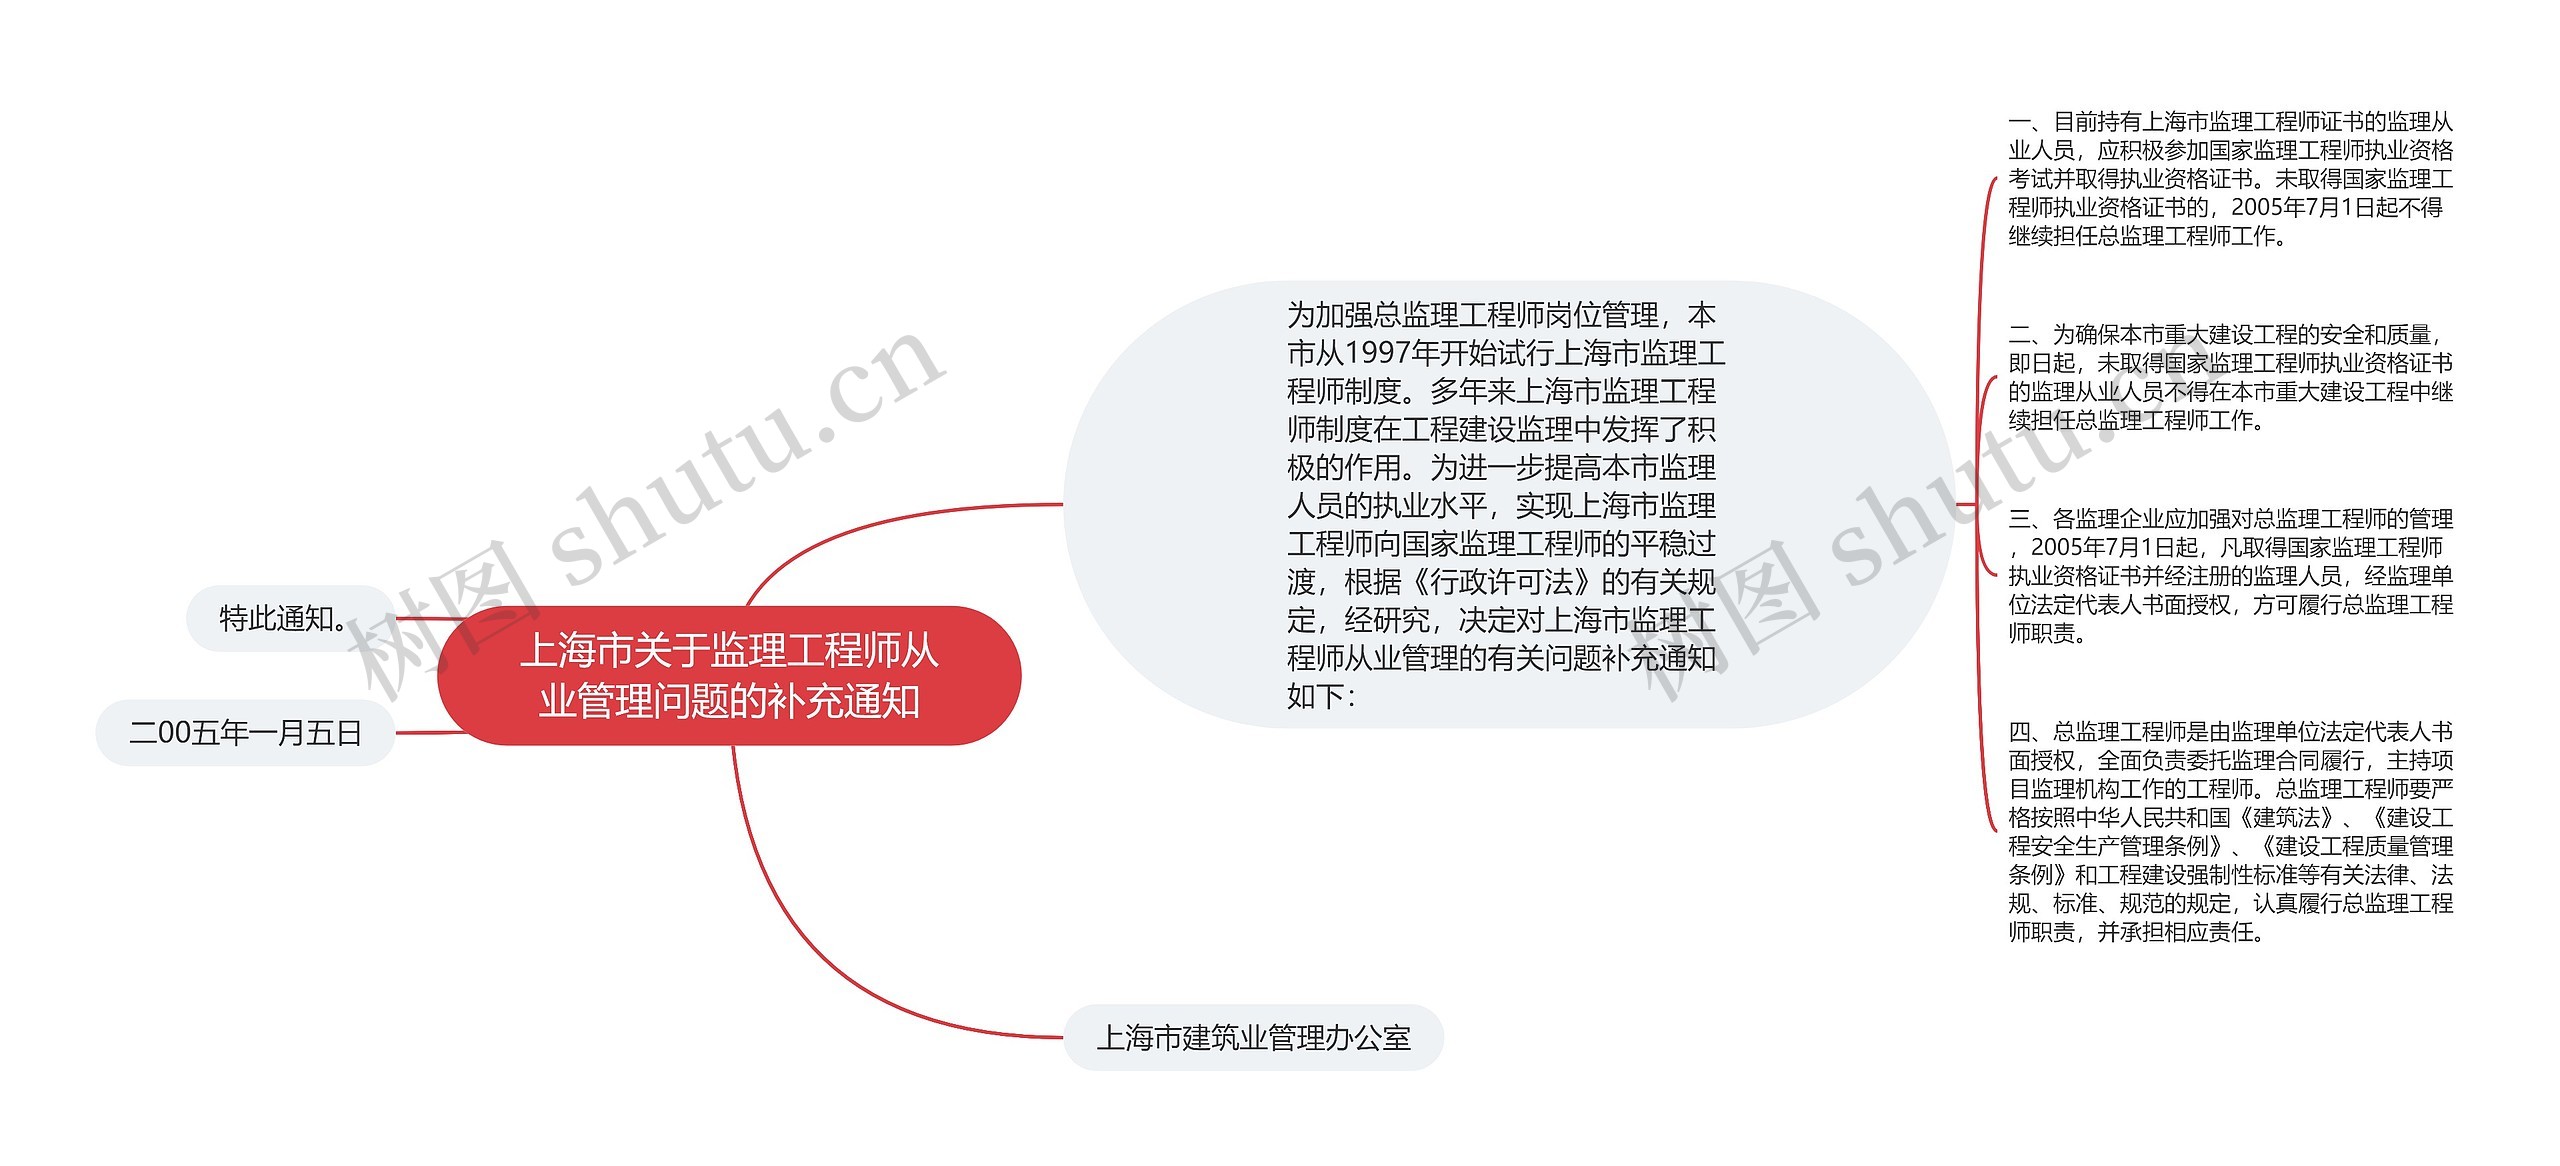 上海市关于监理工程师从业管理问题的补充通知思维导图